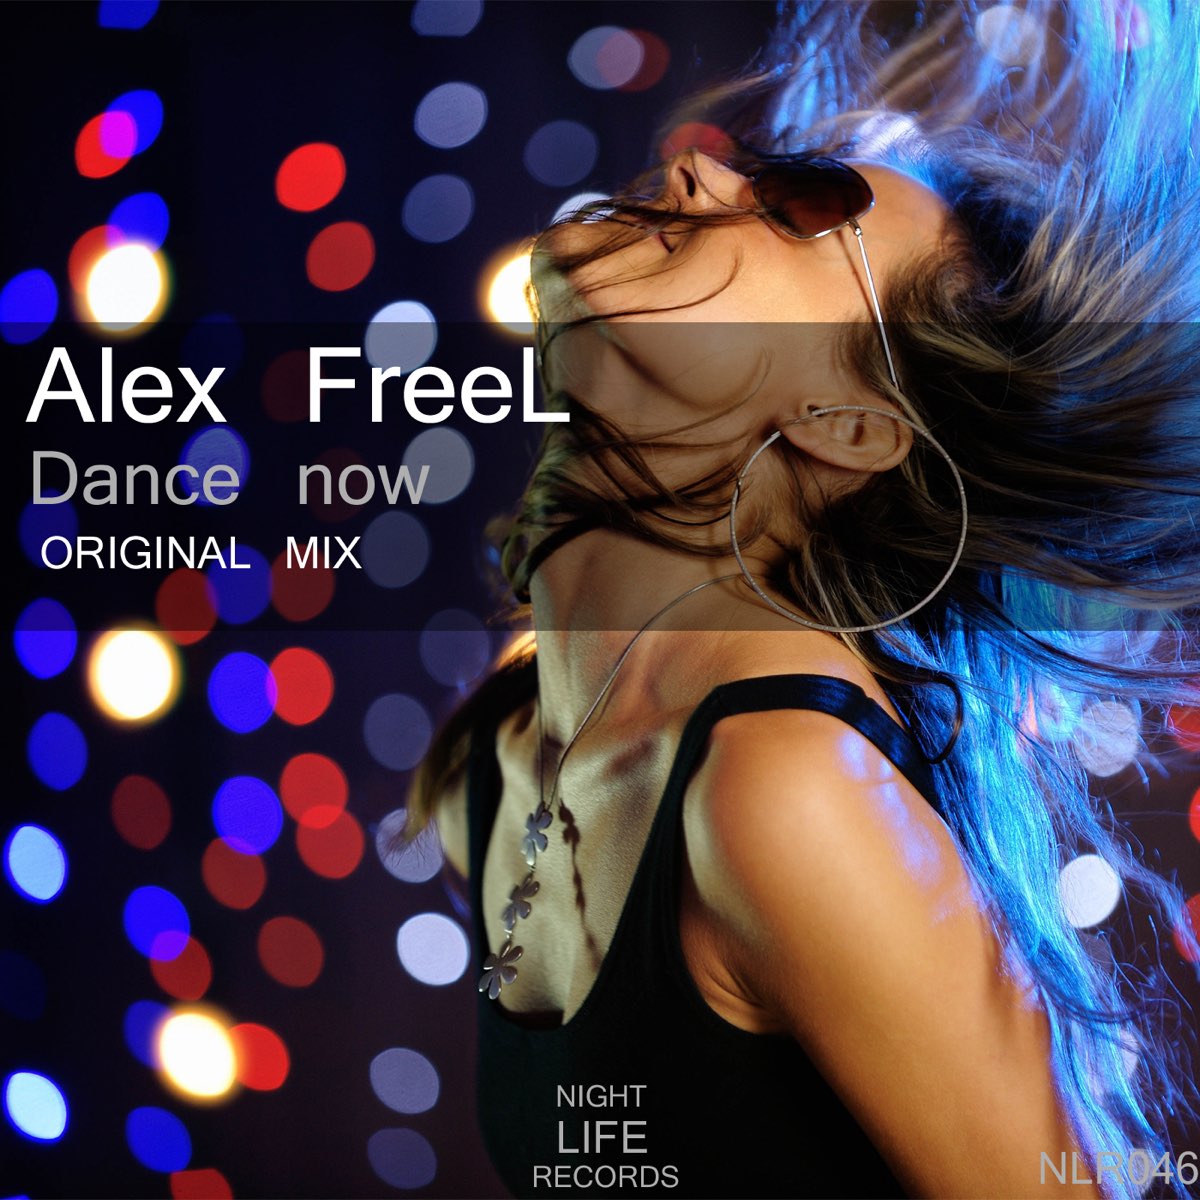 Feeling танцы. Night Life (Original Mix ) дабстеп. Фото Alex Dance. Песня дэнс. Alex Freel музыка слушать.